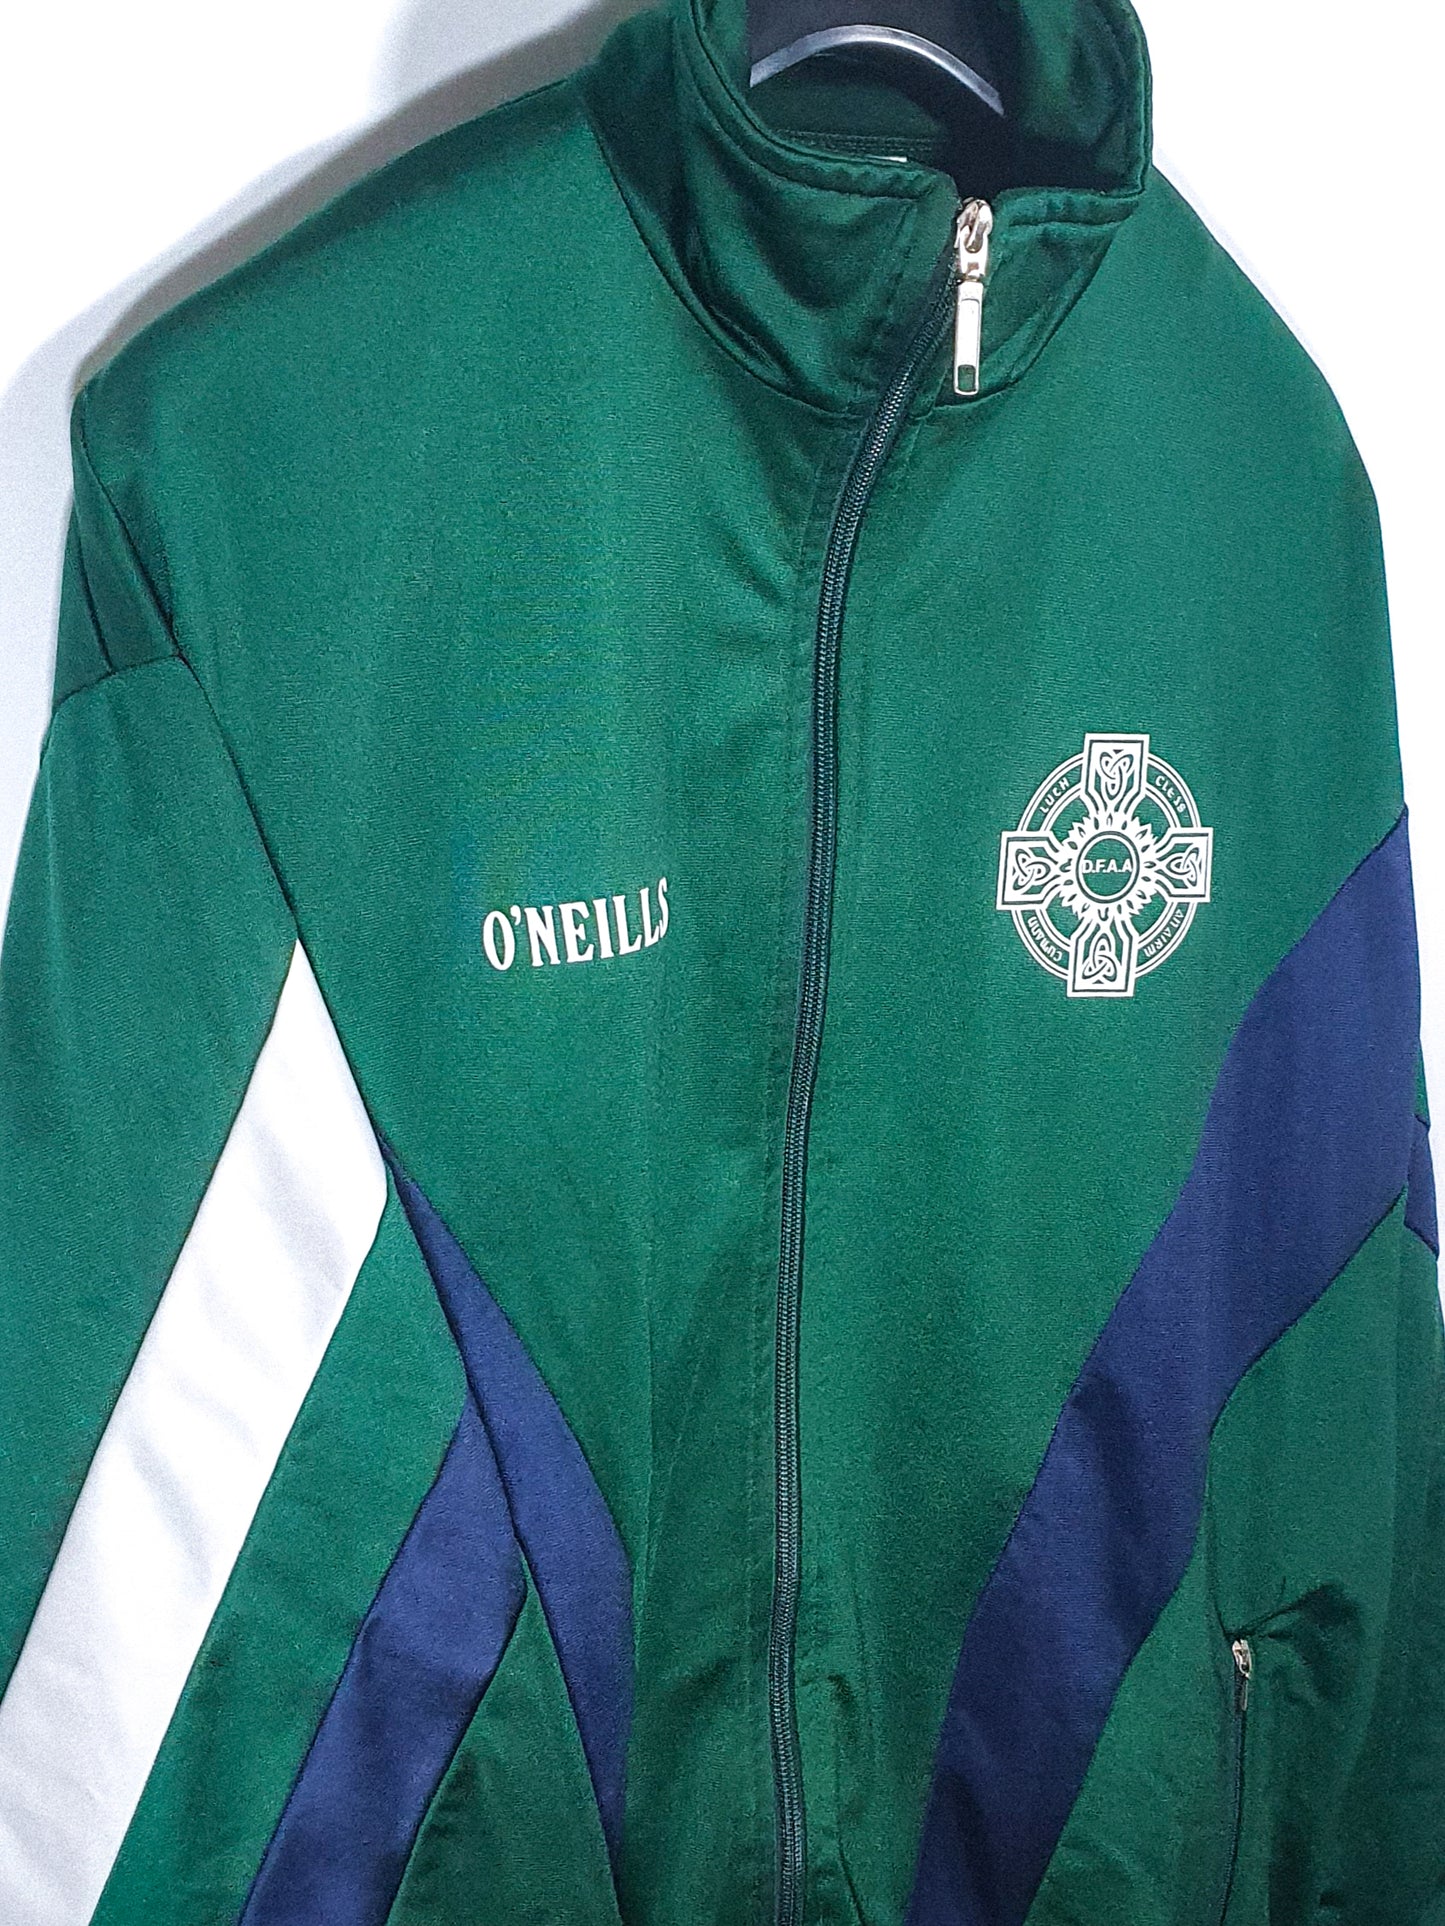 Irish Army GAA Jacket 1990s (L)